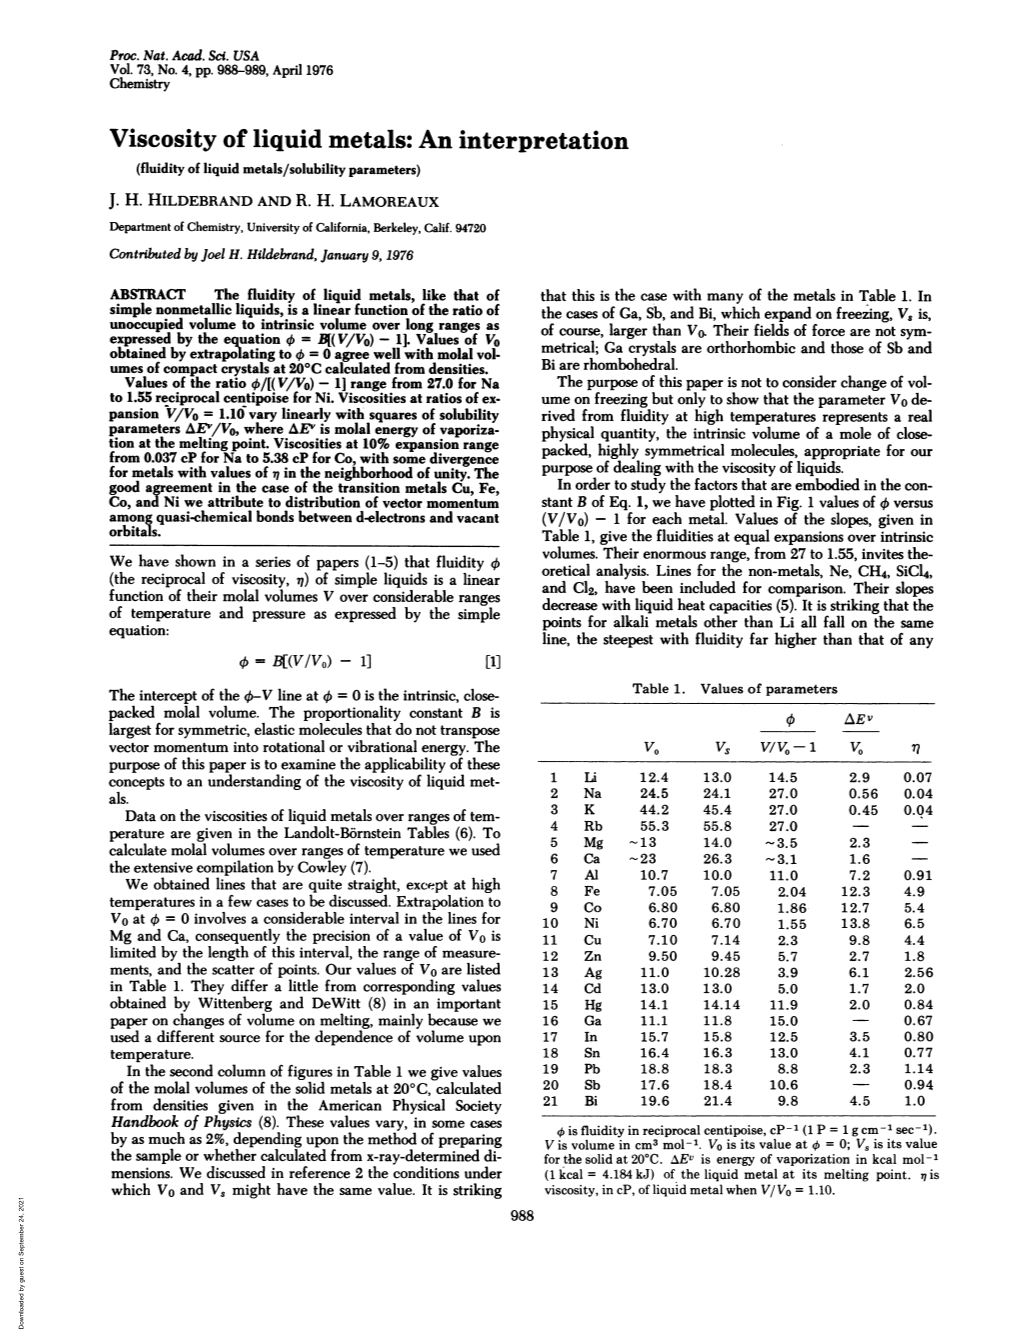 Viscosity of Liquid Metals: an Interpretation (Fluidity of Liquid Metals/Solubility Parameters) J